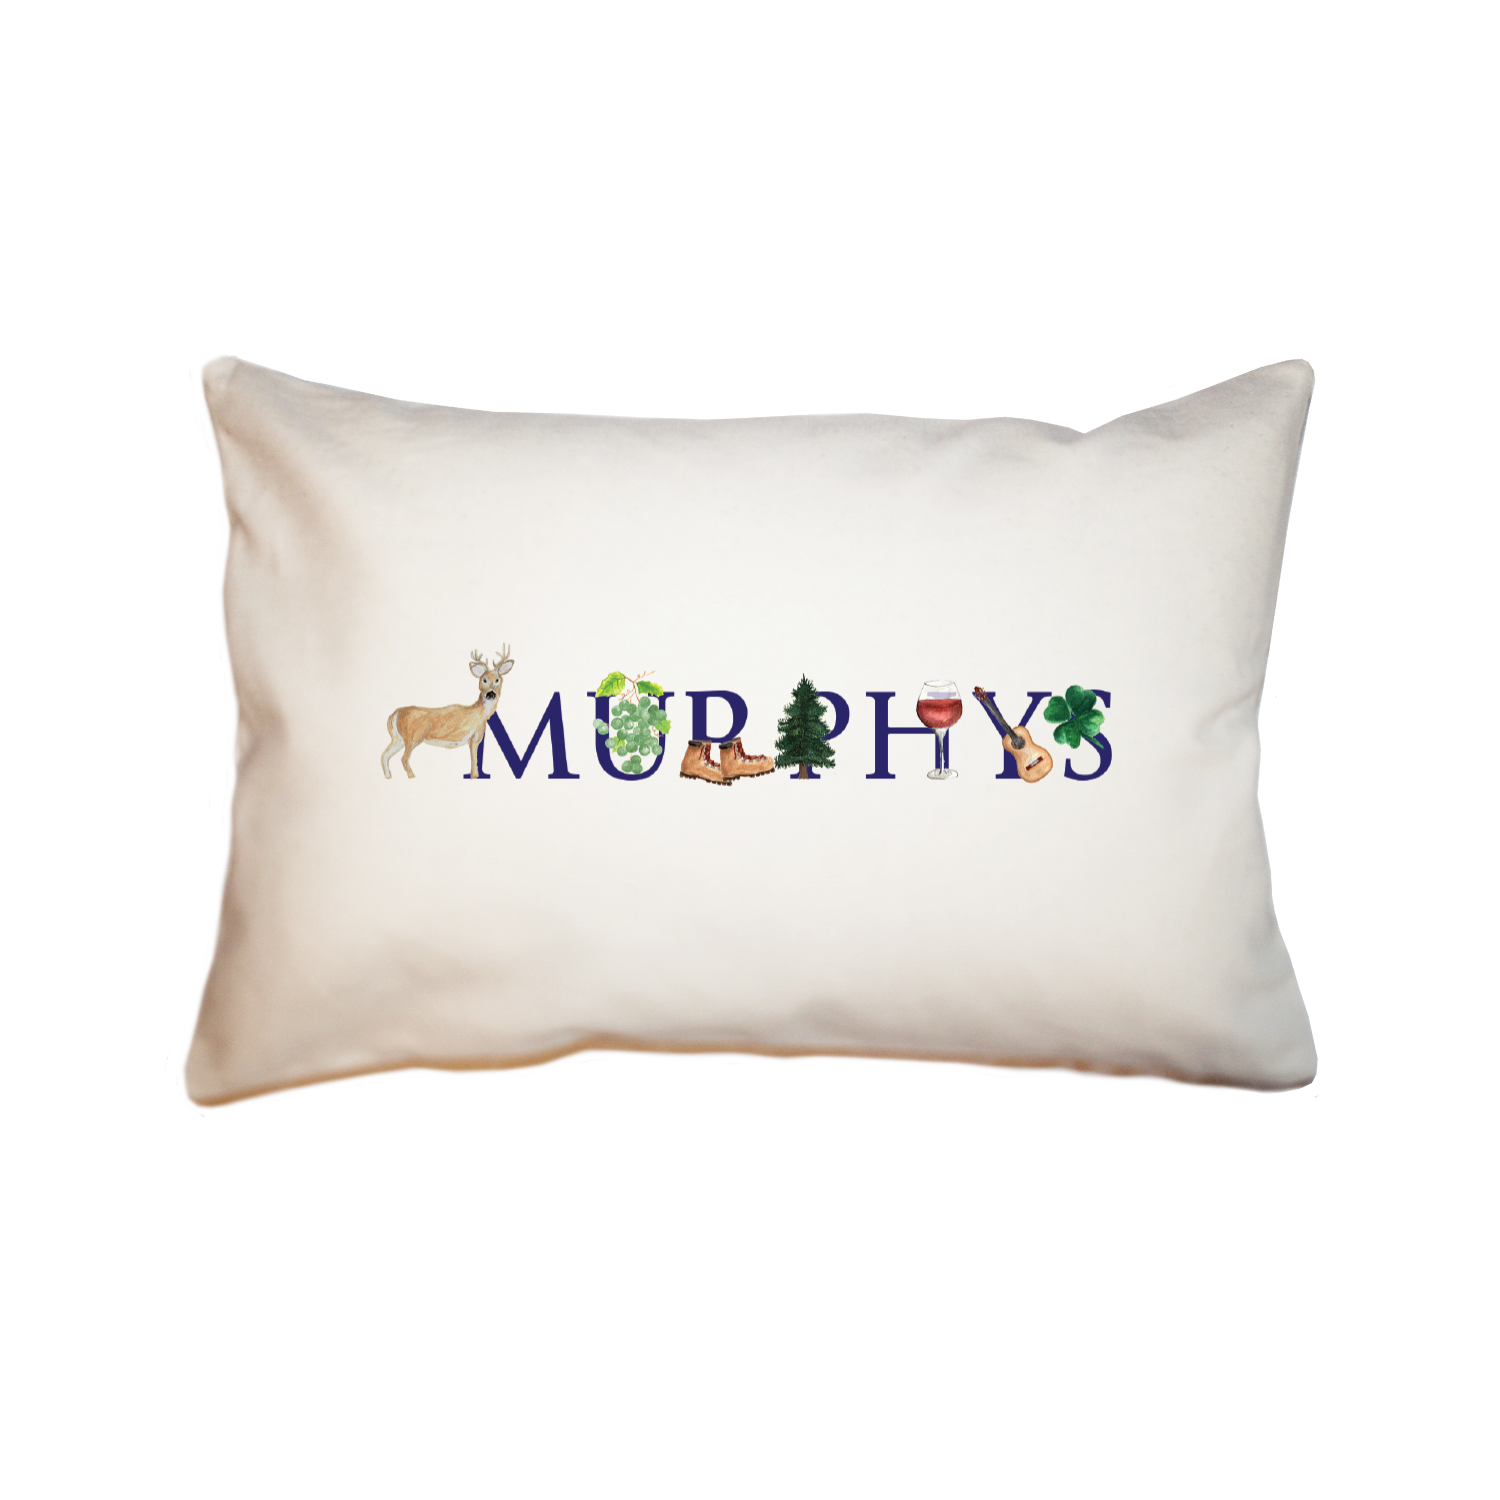 murphys large rectangle pillow